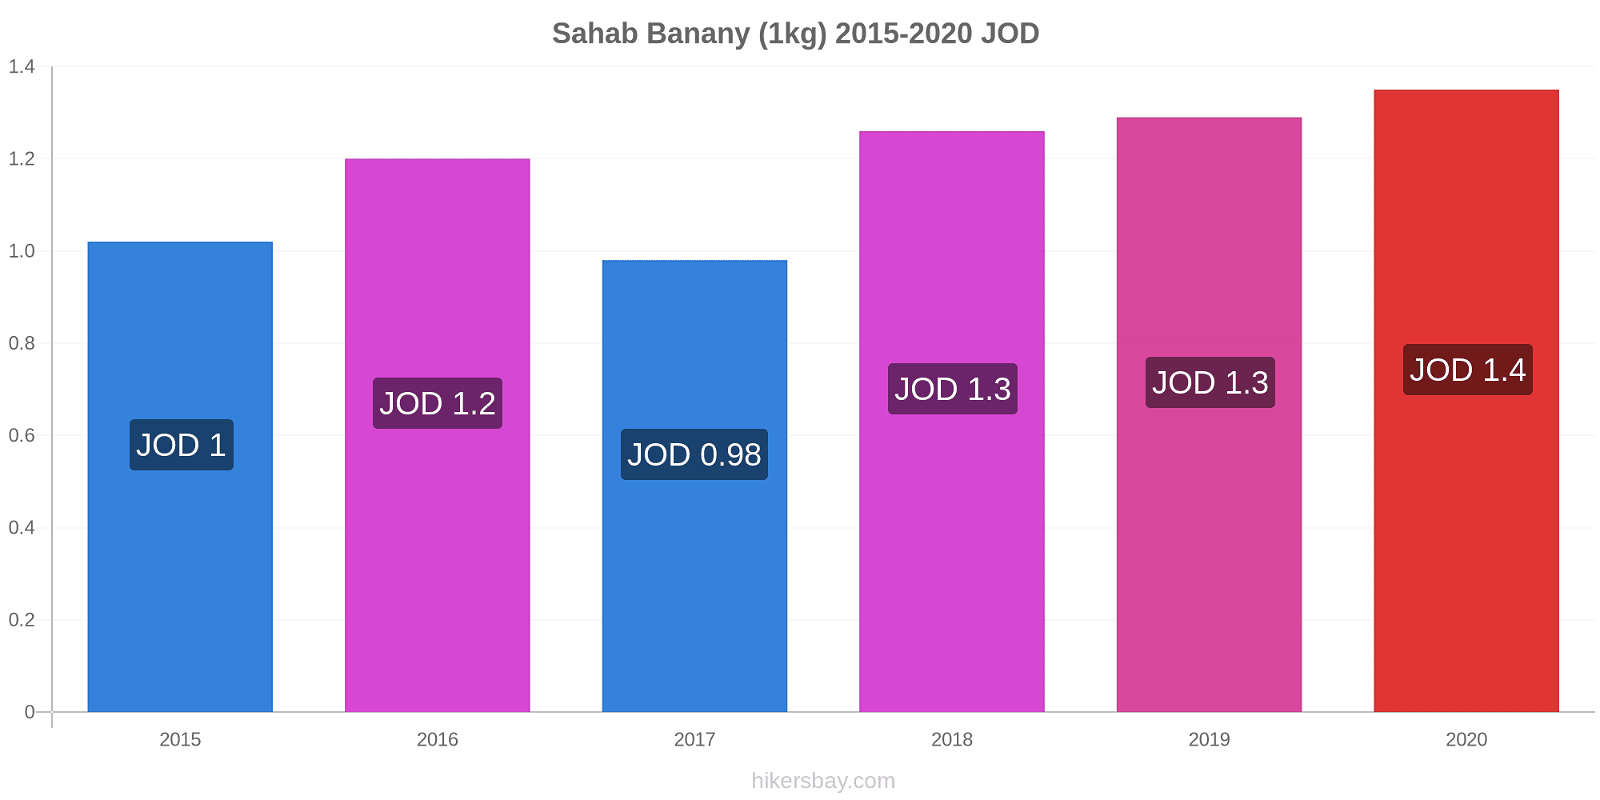 Sahab zmiany cen Banany (1kg) hikersbay.com